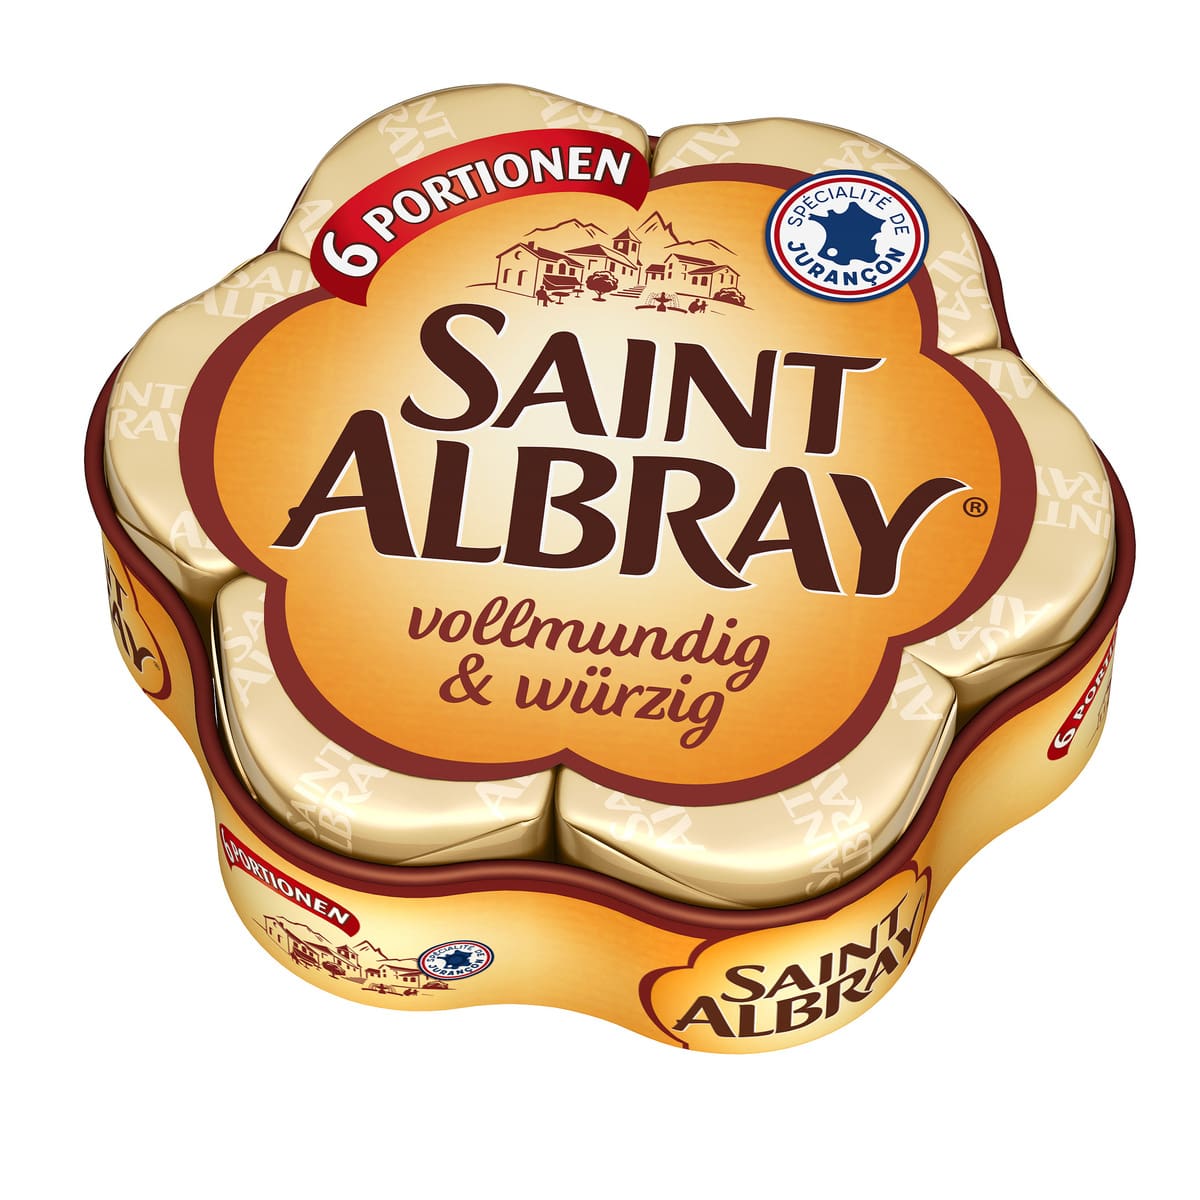 Saint Albray 62% 6 x 30g